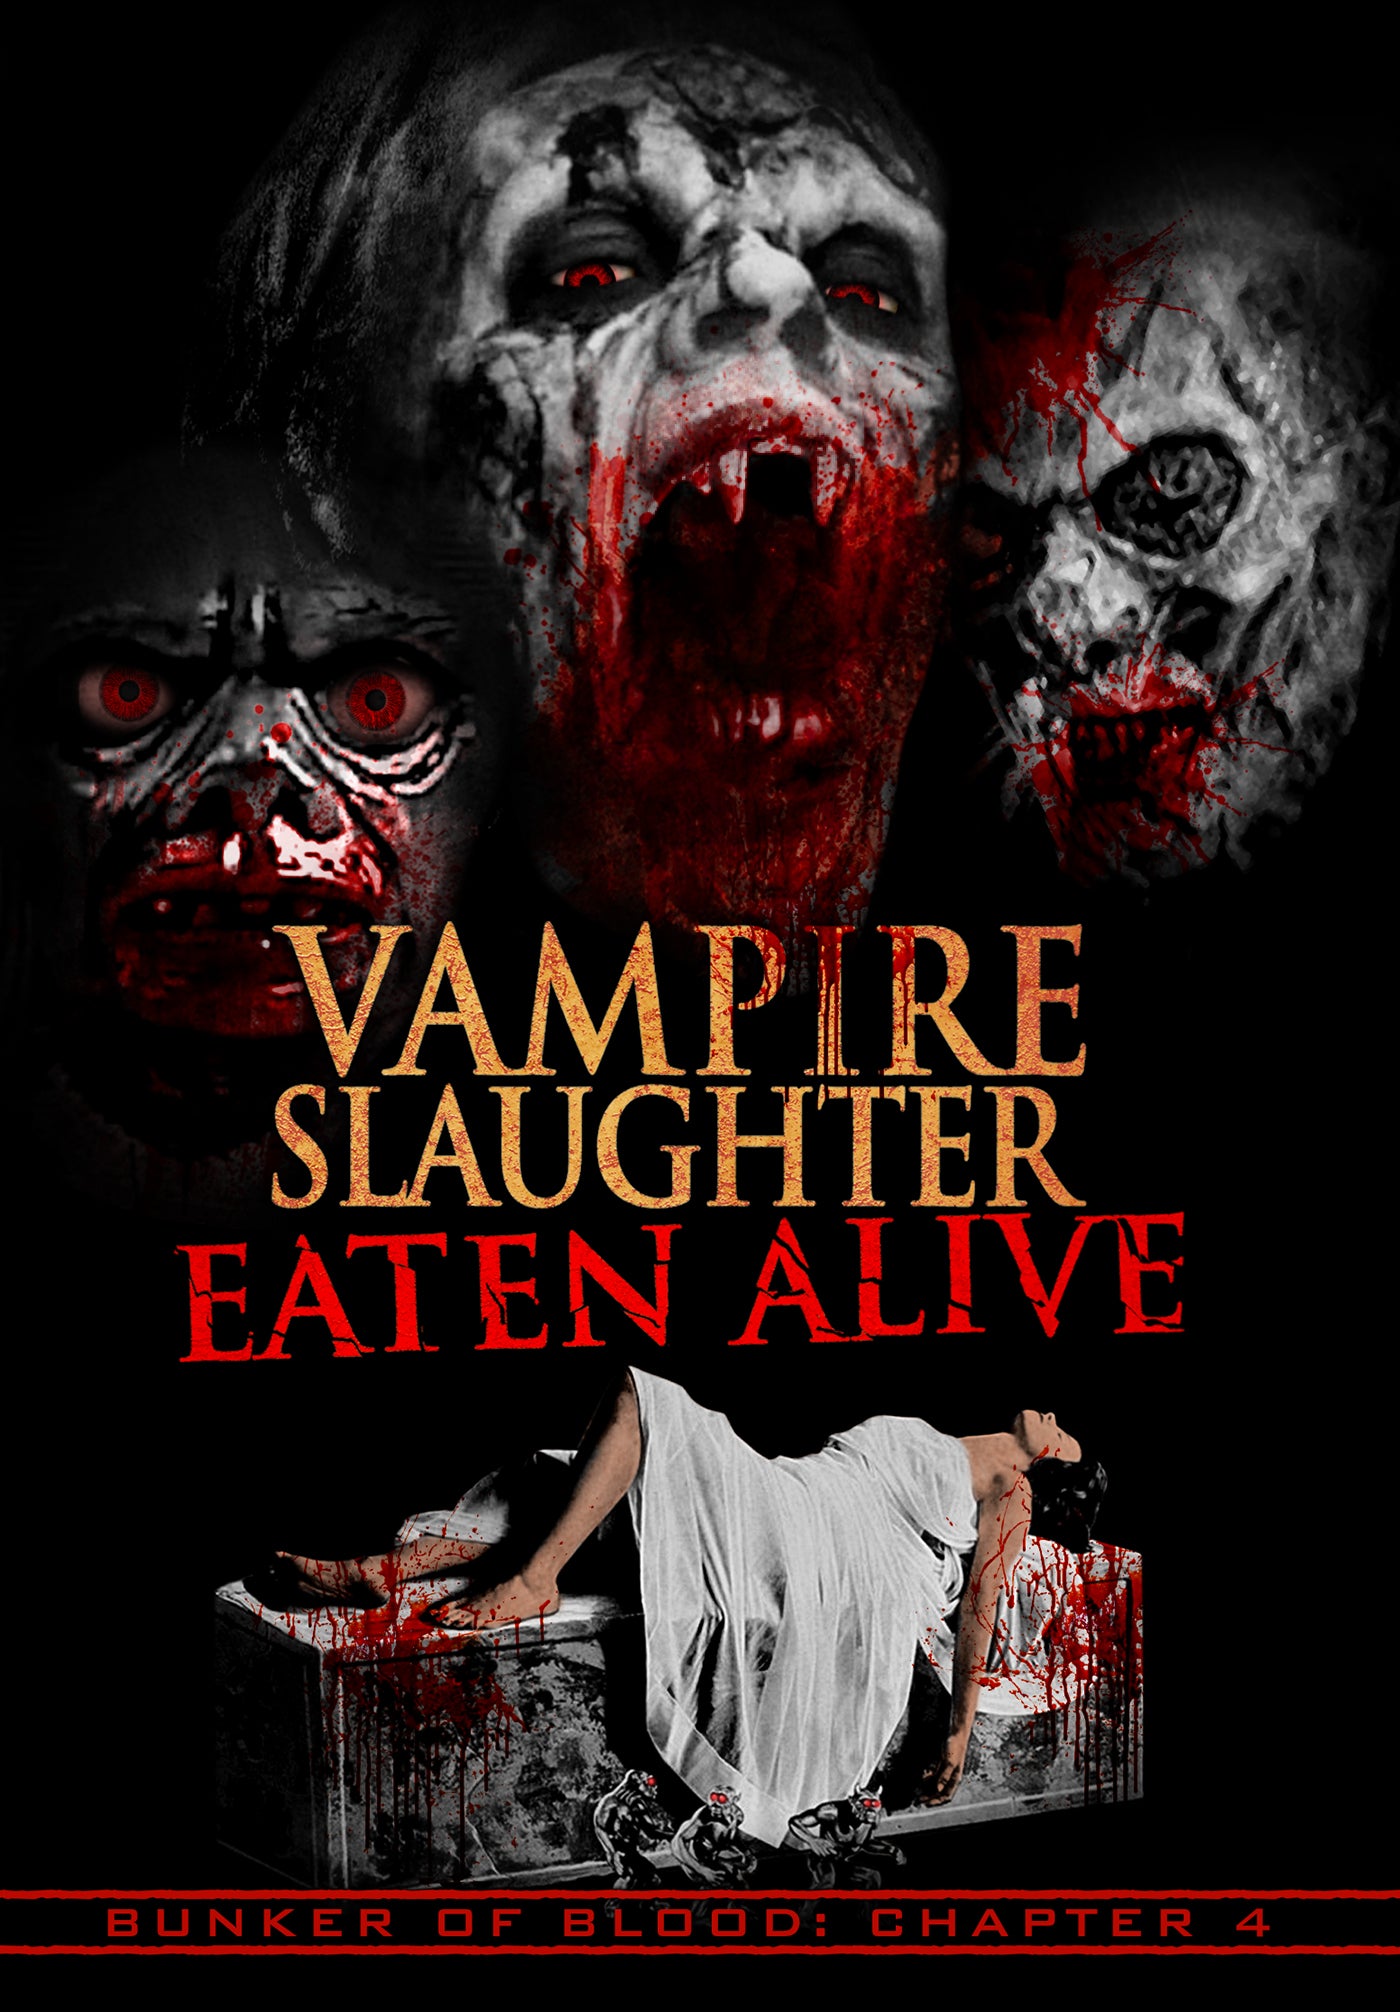 BUNKER OF BLOOD 4: VAMPIRE SLAUGHTER EATEN ALIVE DVD